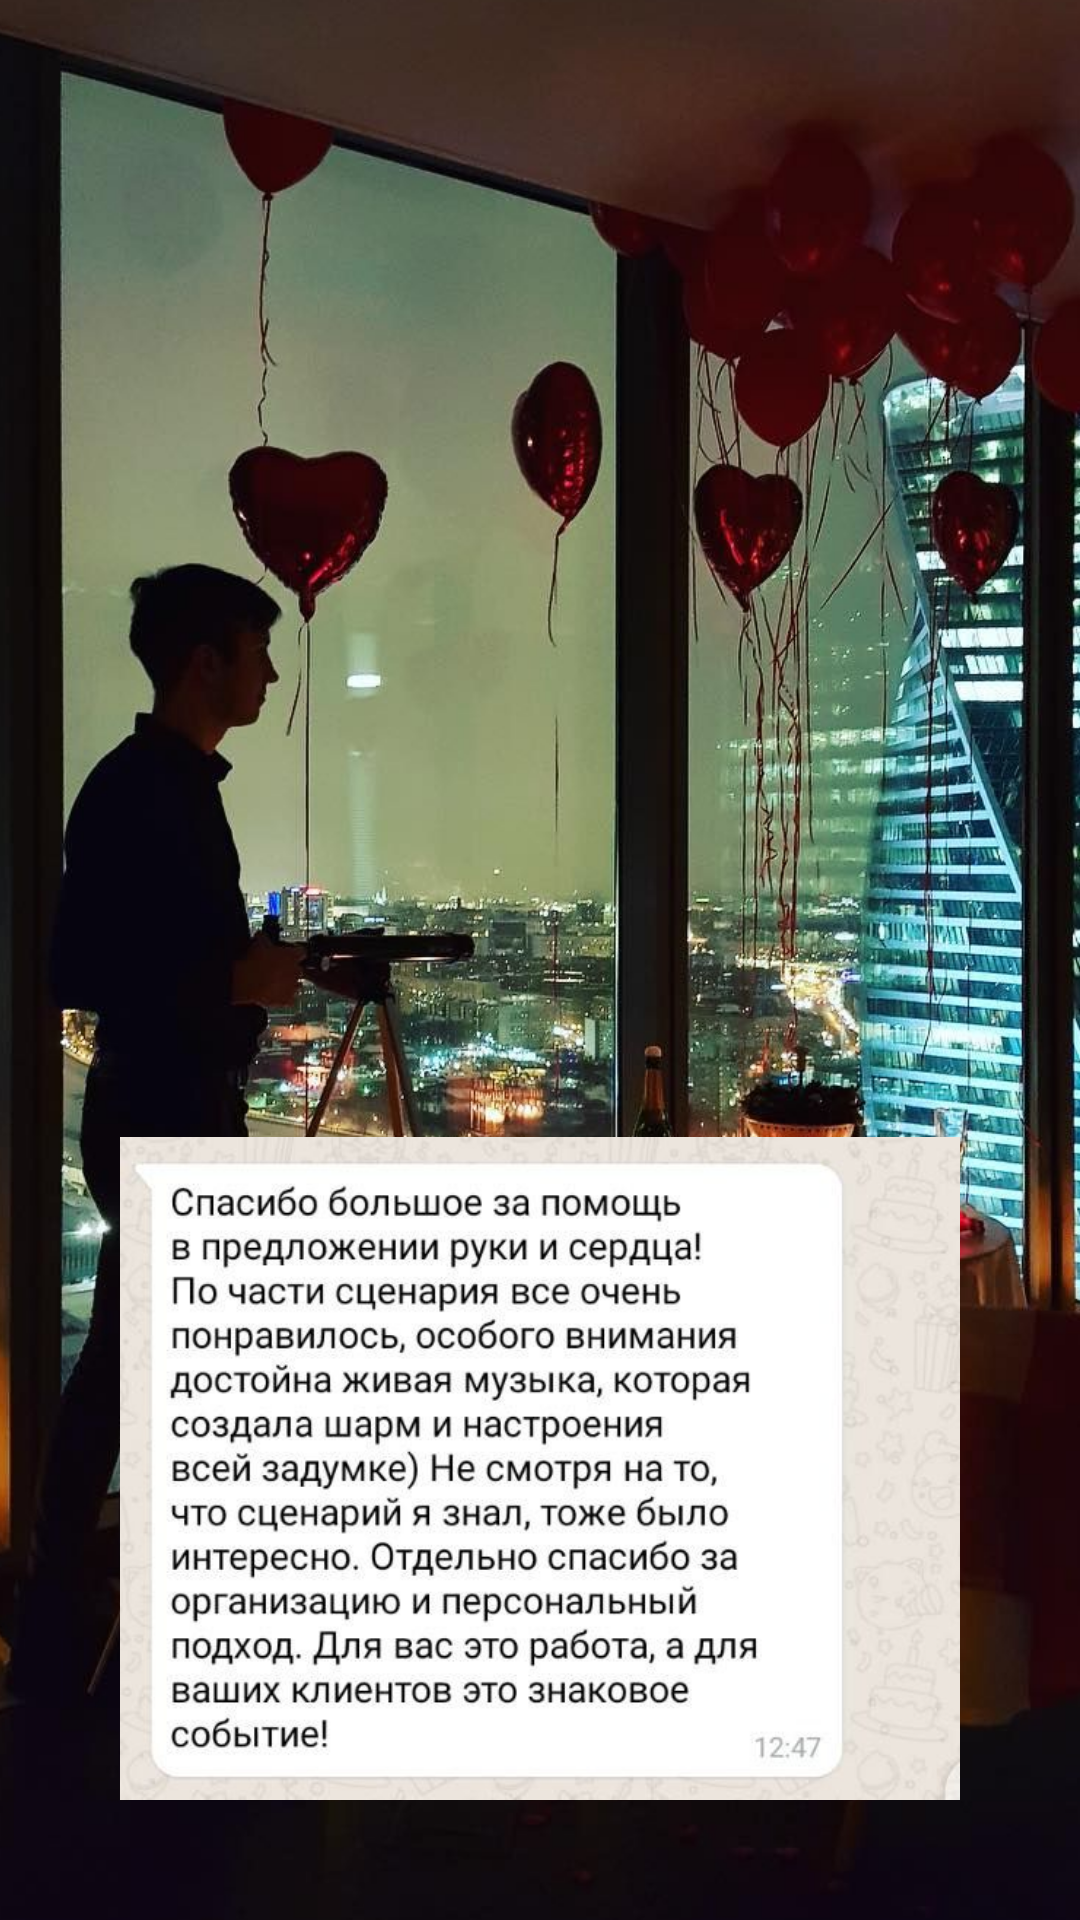 Организация предложения руки и сердца в Севастополе
от компании Pandaevent